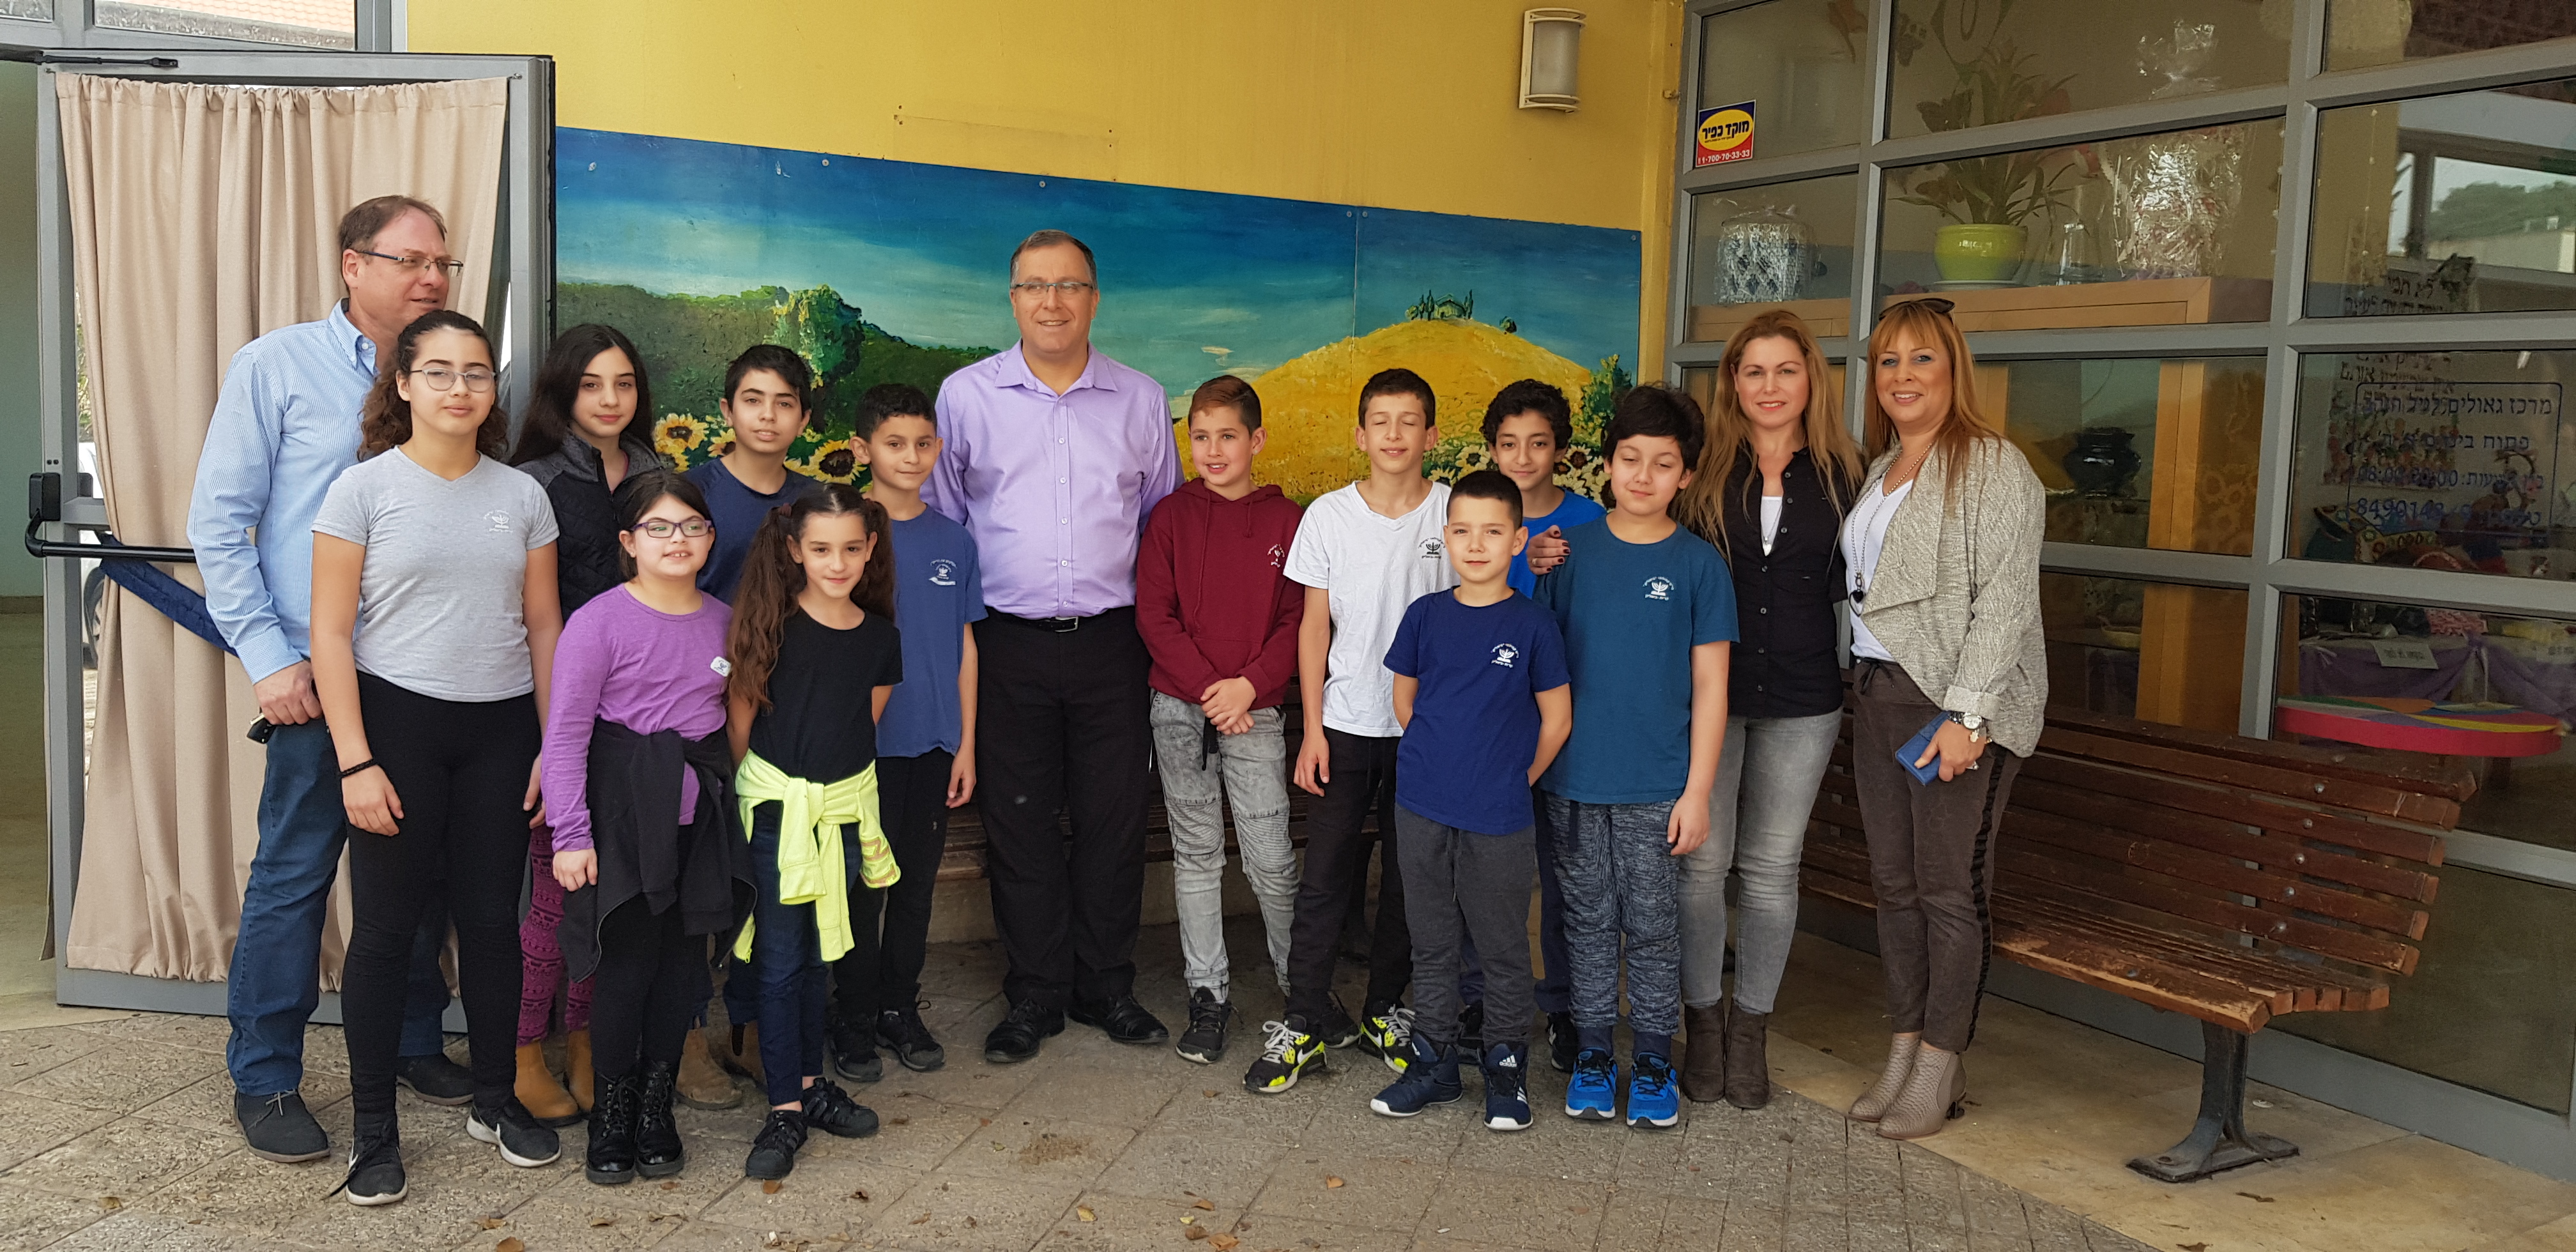 תלמידי בית ספר יסודי "ביאליק" בקריית ביאליק מתחרים באקדמיה ללשון וממציאים מילים עבריות לכבוד חגיגות ה70 של מדינת ישראל.